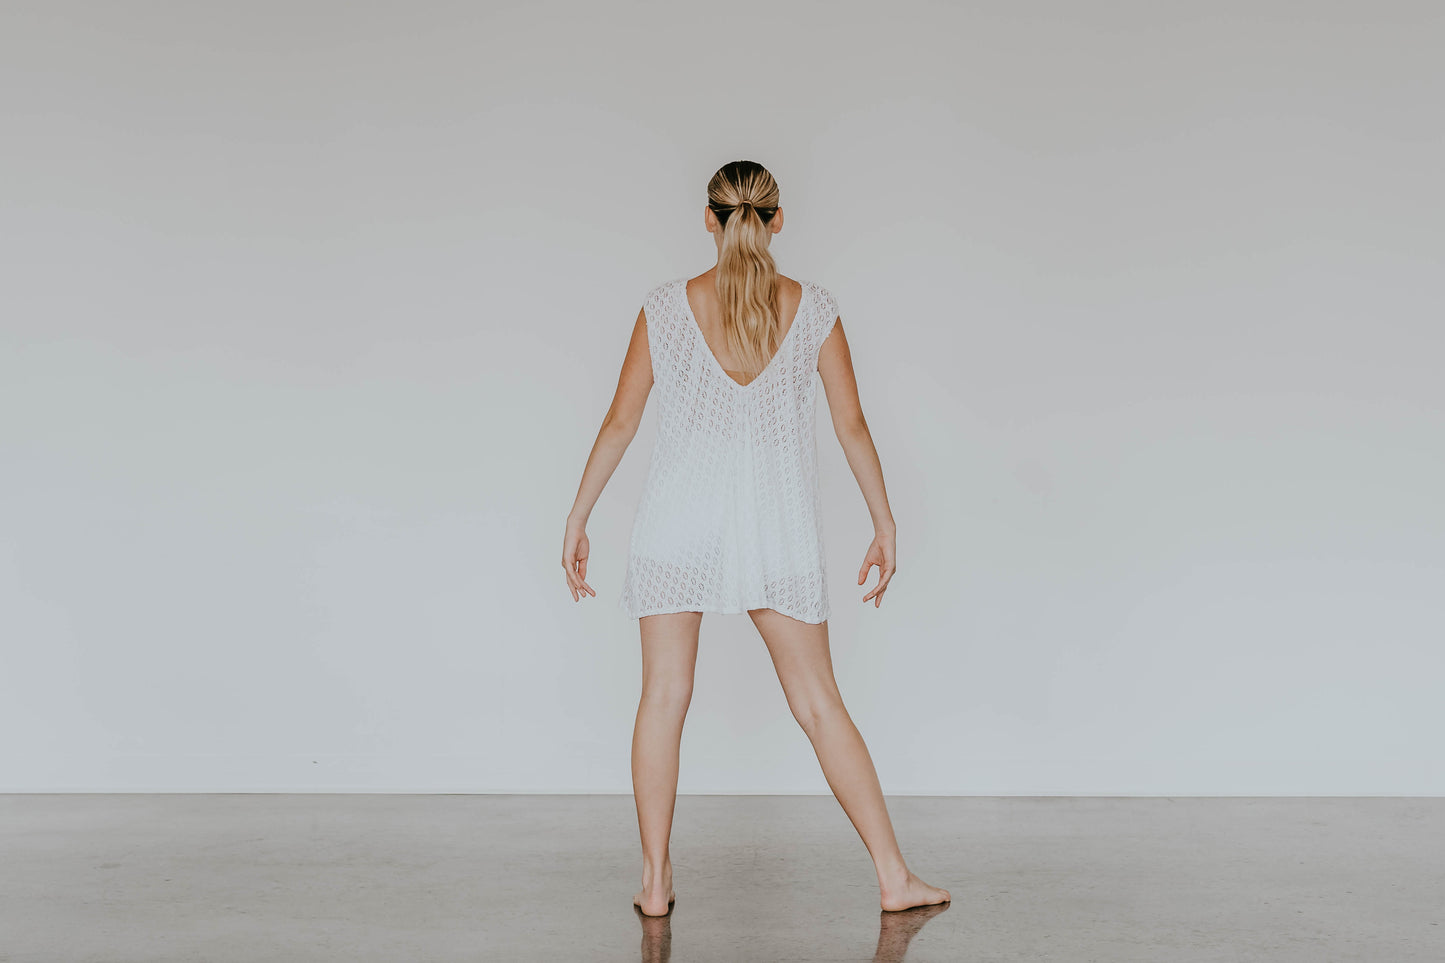 White Lace/Net Shift Dress with Booty Shorts - Swarovski Rhinestones